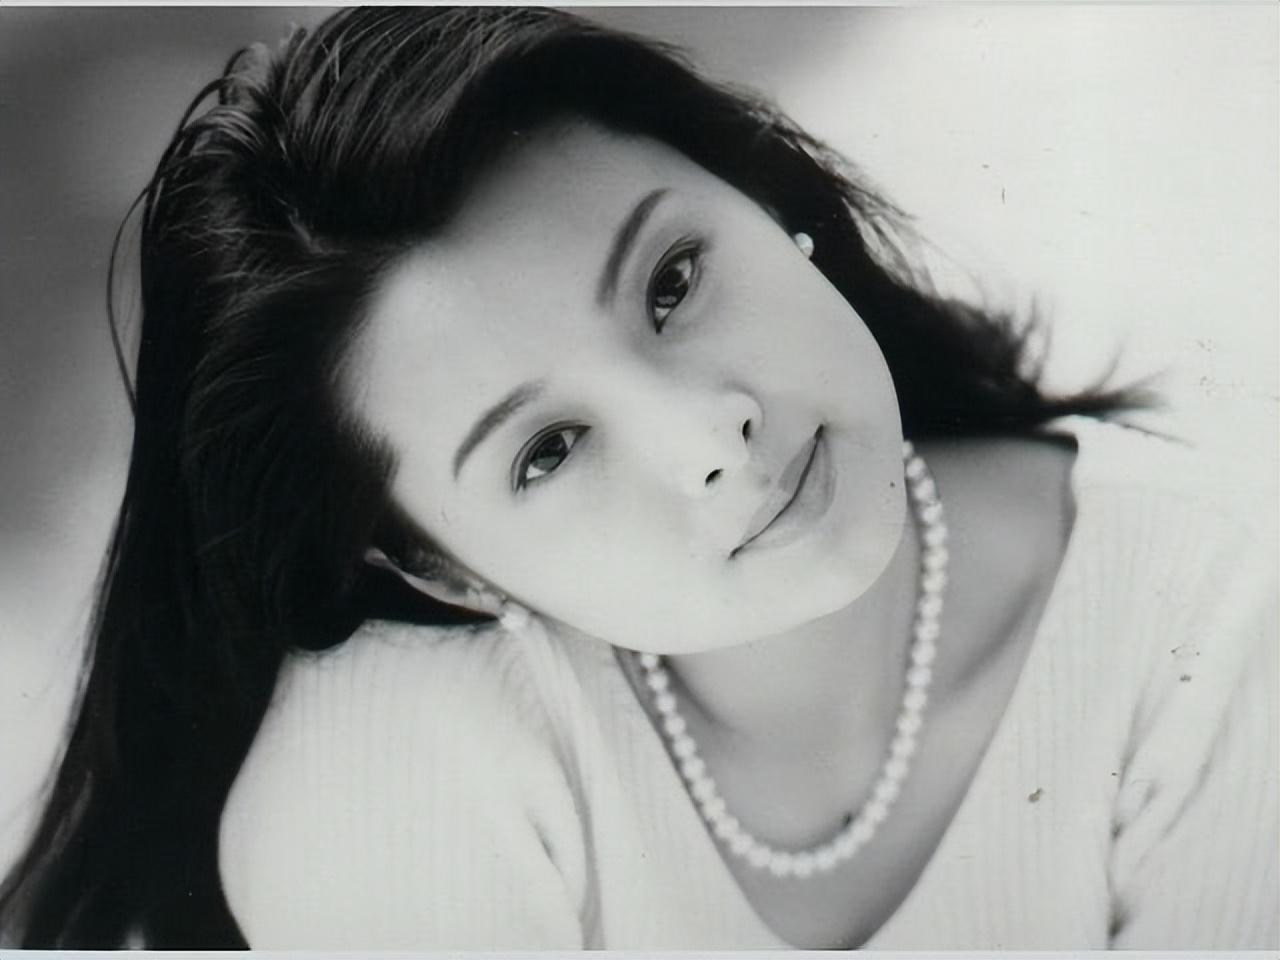 1993年,初识徐威时,袁立刚刚20岁,正值桃李年华的她出落得越发水灵